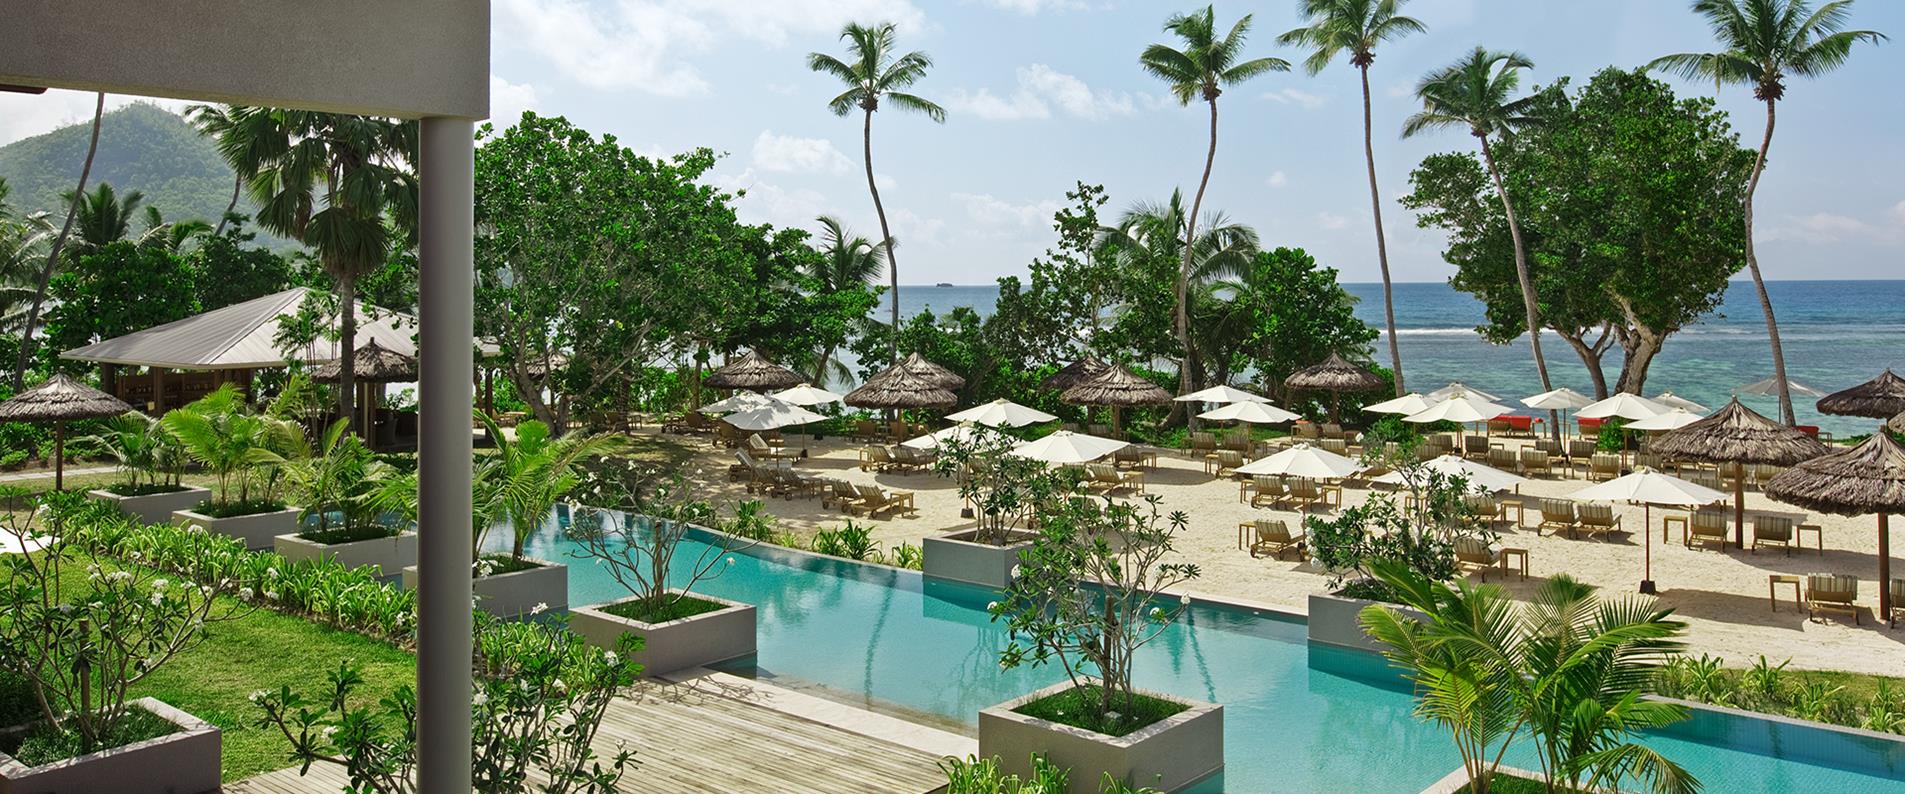 Resorts in Seychelles / Kempinski Seychelles Resort